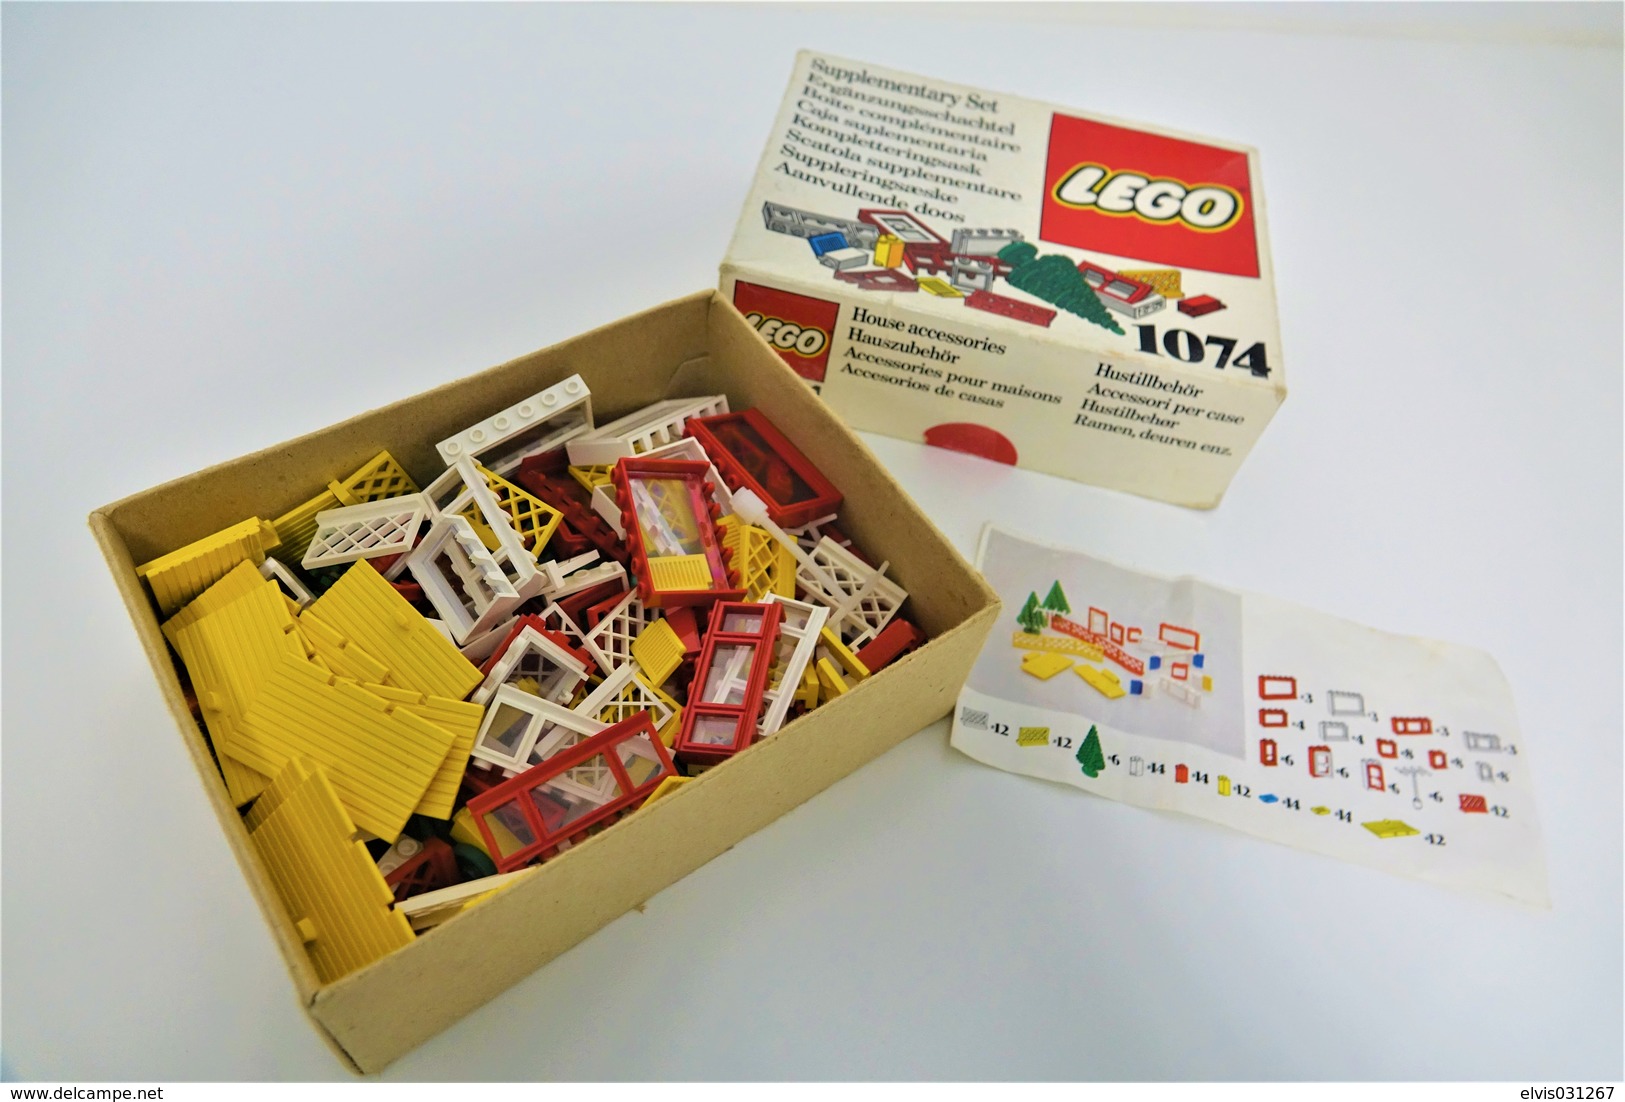 LEGO - 1074 Supplementary Box -very Rare - Original Box - Original Lego 1976 - Vintage - Cataloghi